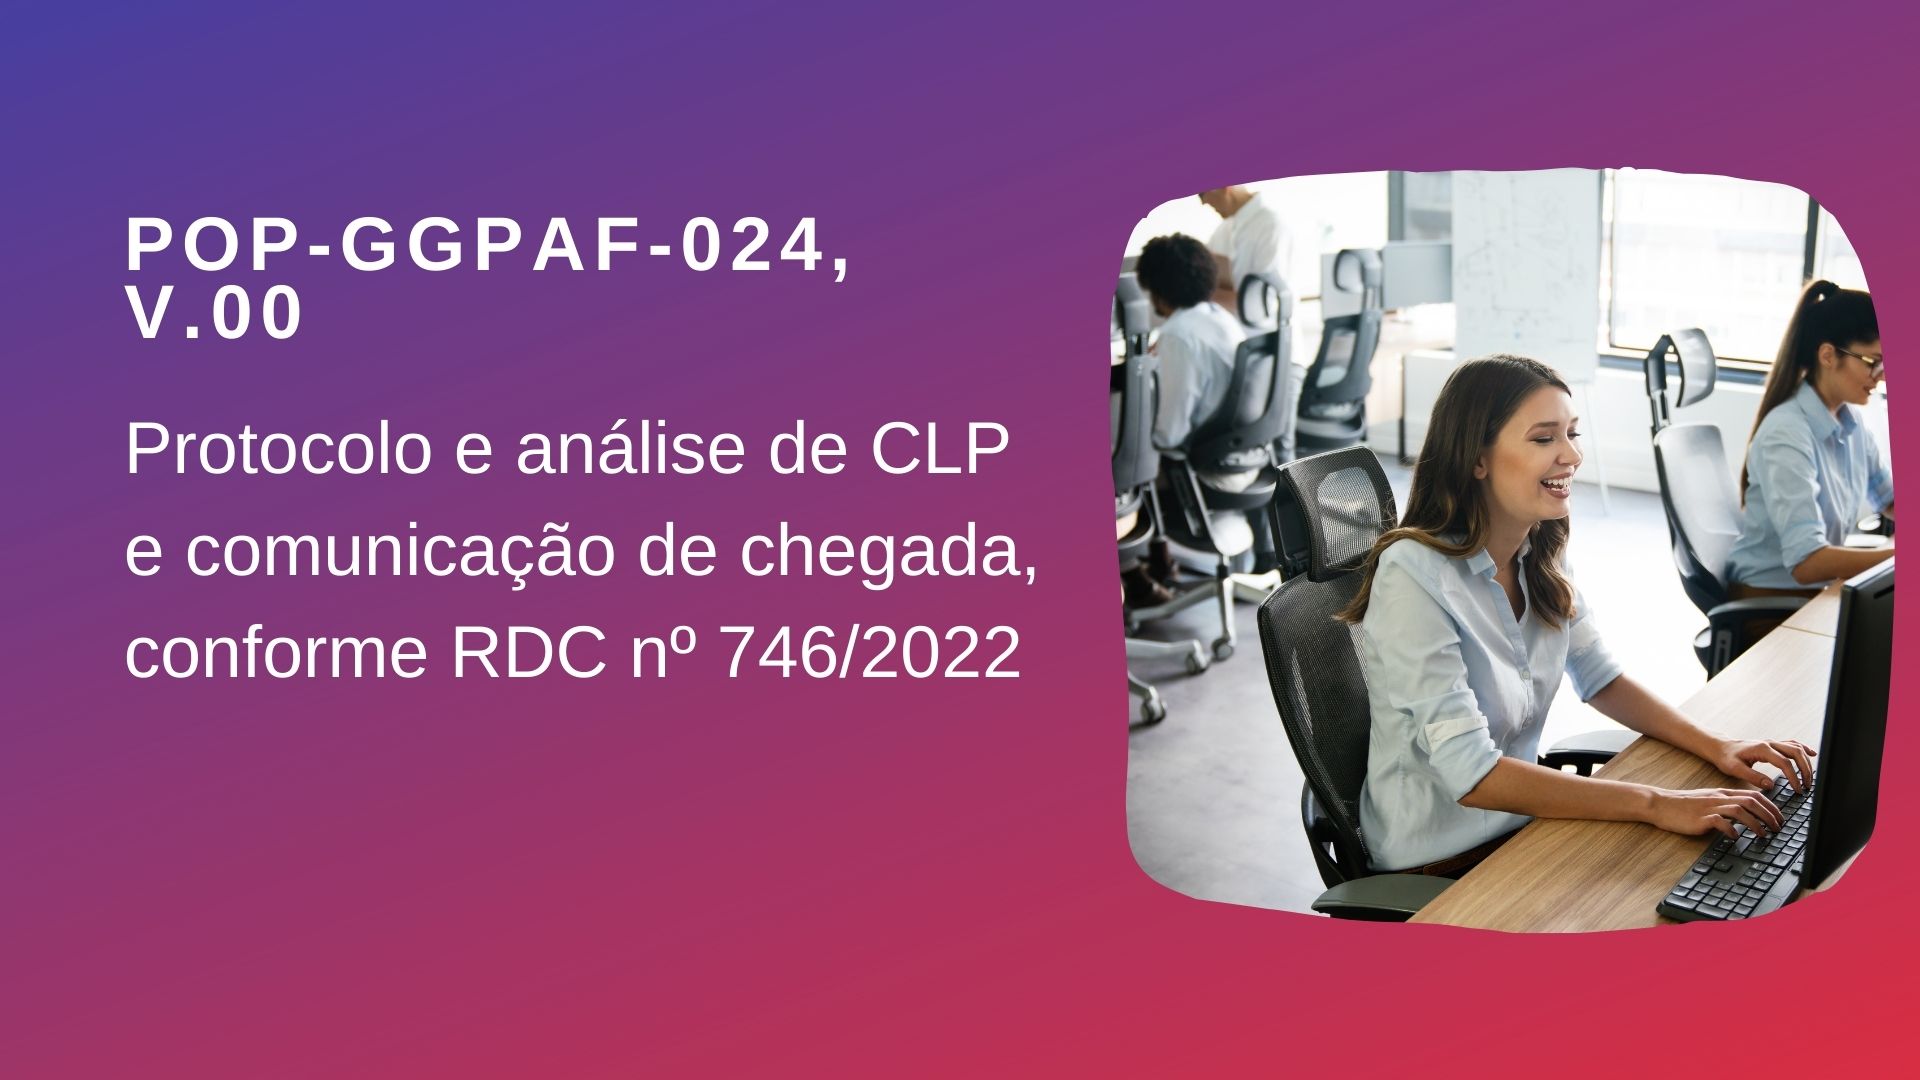 POP-GGPAF-024 - PROTOCOLO E ANÁLISE DE CLP E COMUNICAÇÃO DE CHEGADA, CONFORME RDC Nº 746/2022